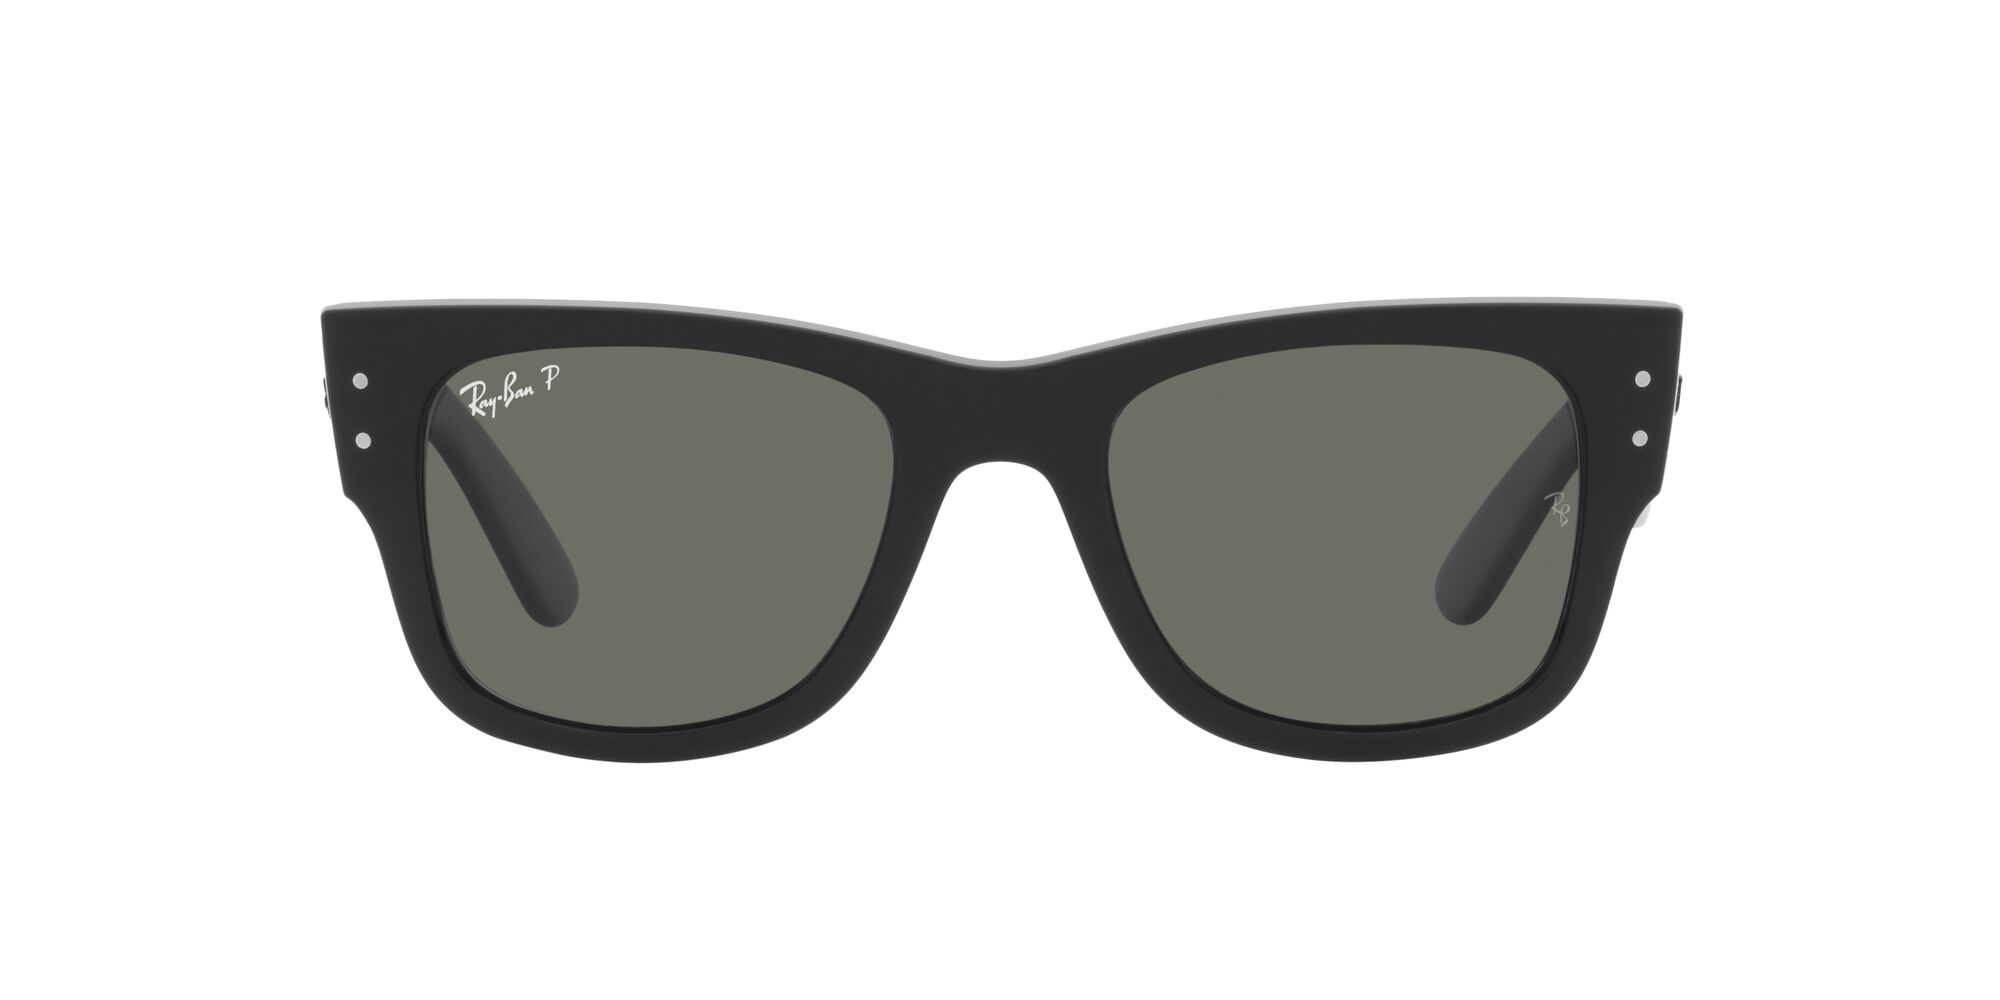 Sunglass Hut® South Africa Online Store | Sunglasses for Women & Men